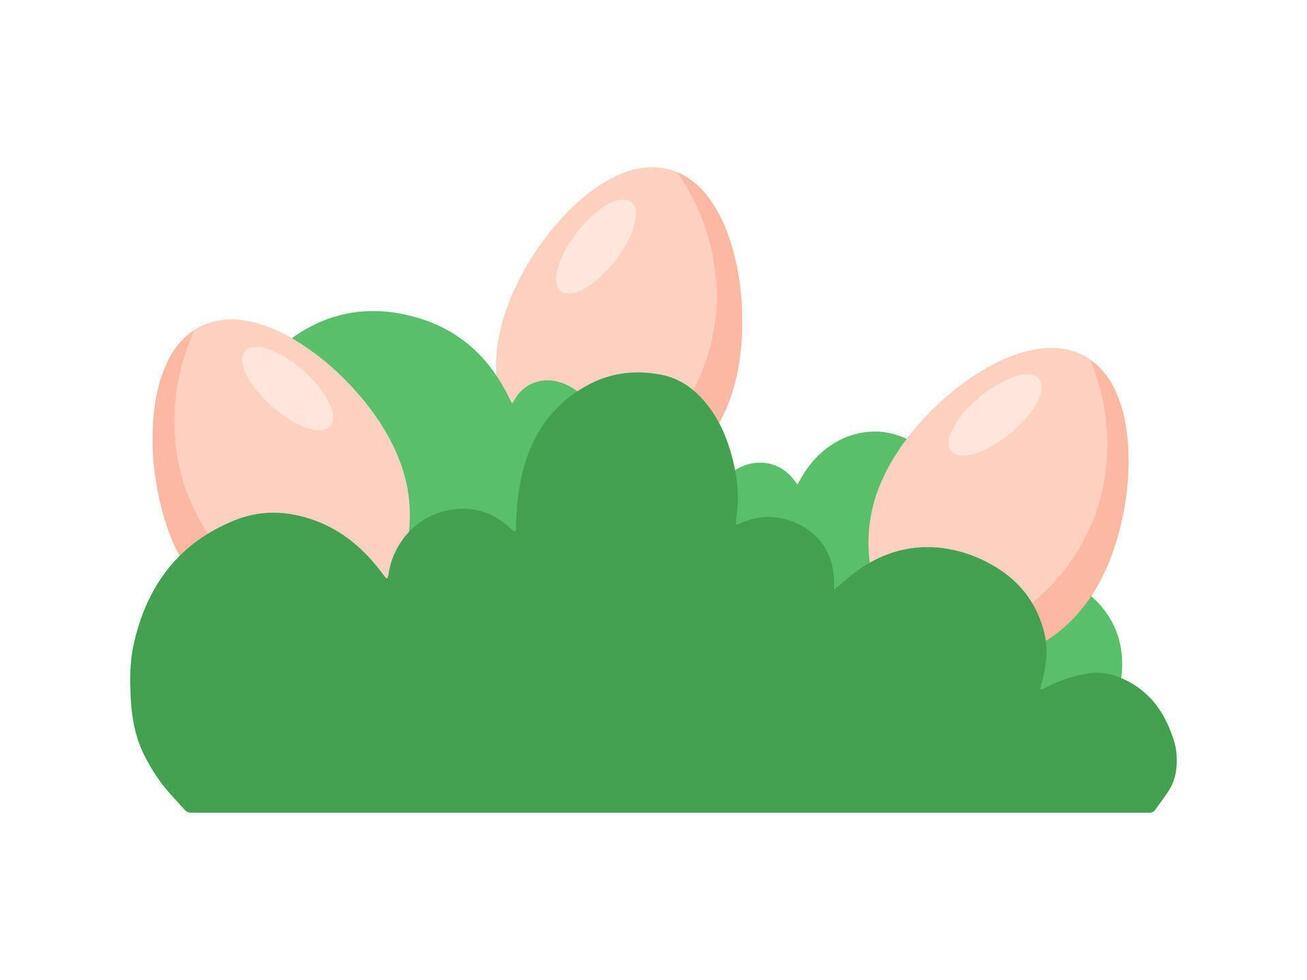 Easter Egg in Green Grass Illustration vector